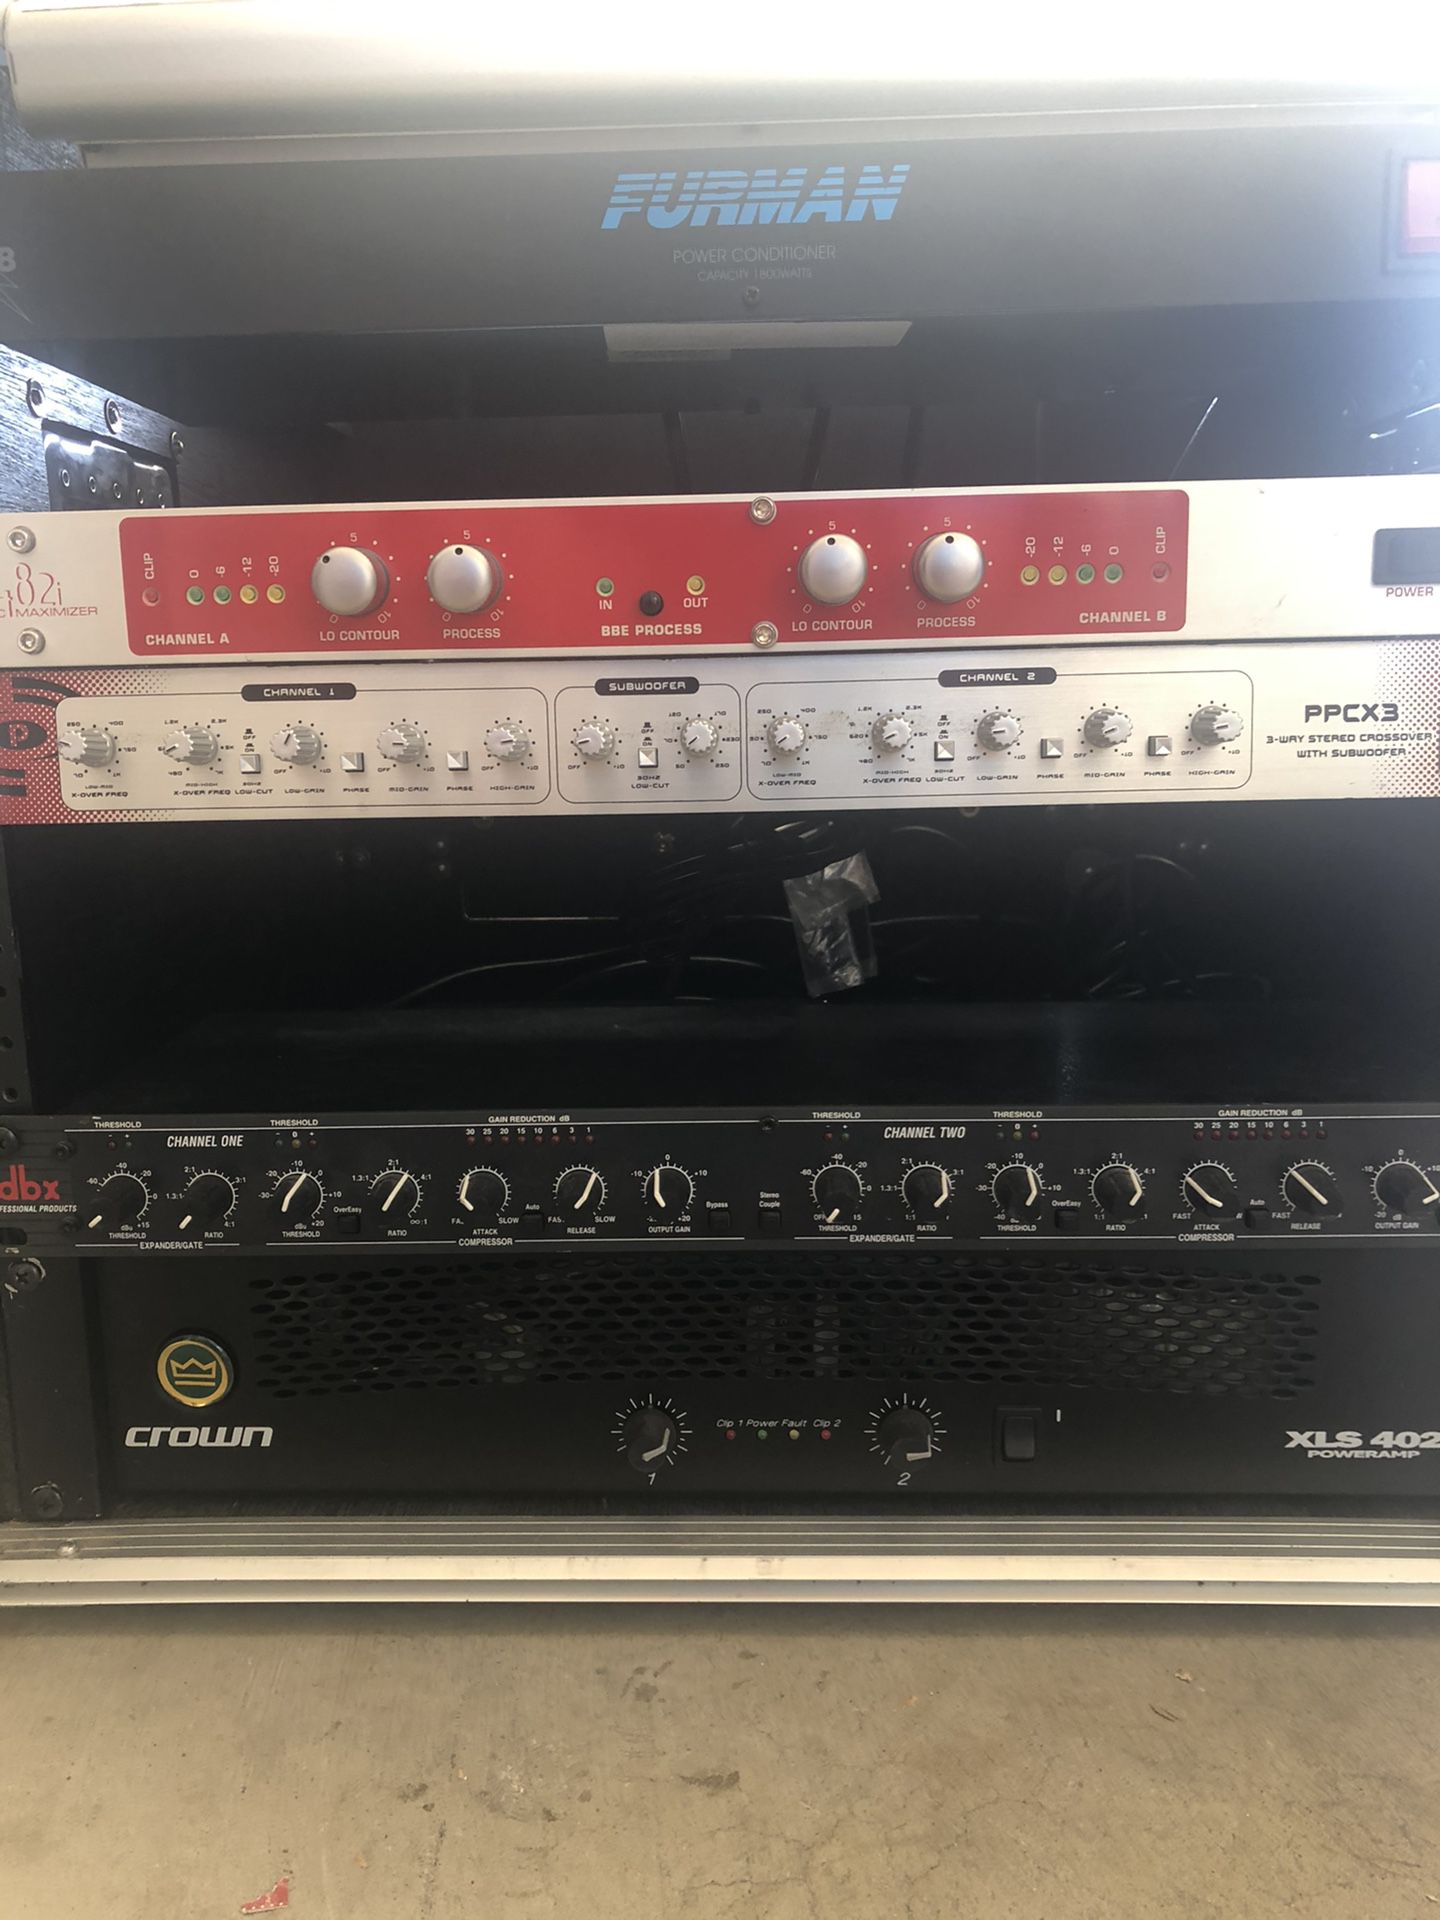 PA, Bass rig, Guitar amp, keyboard